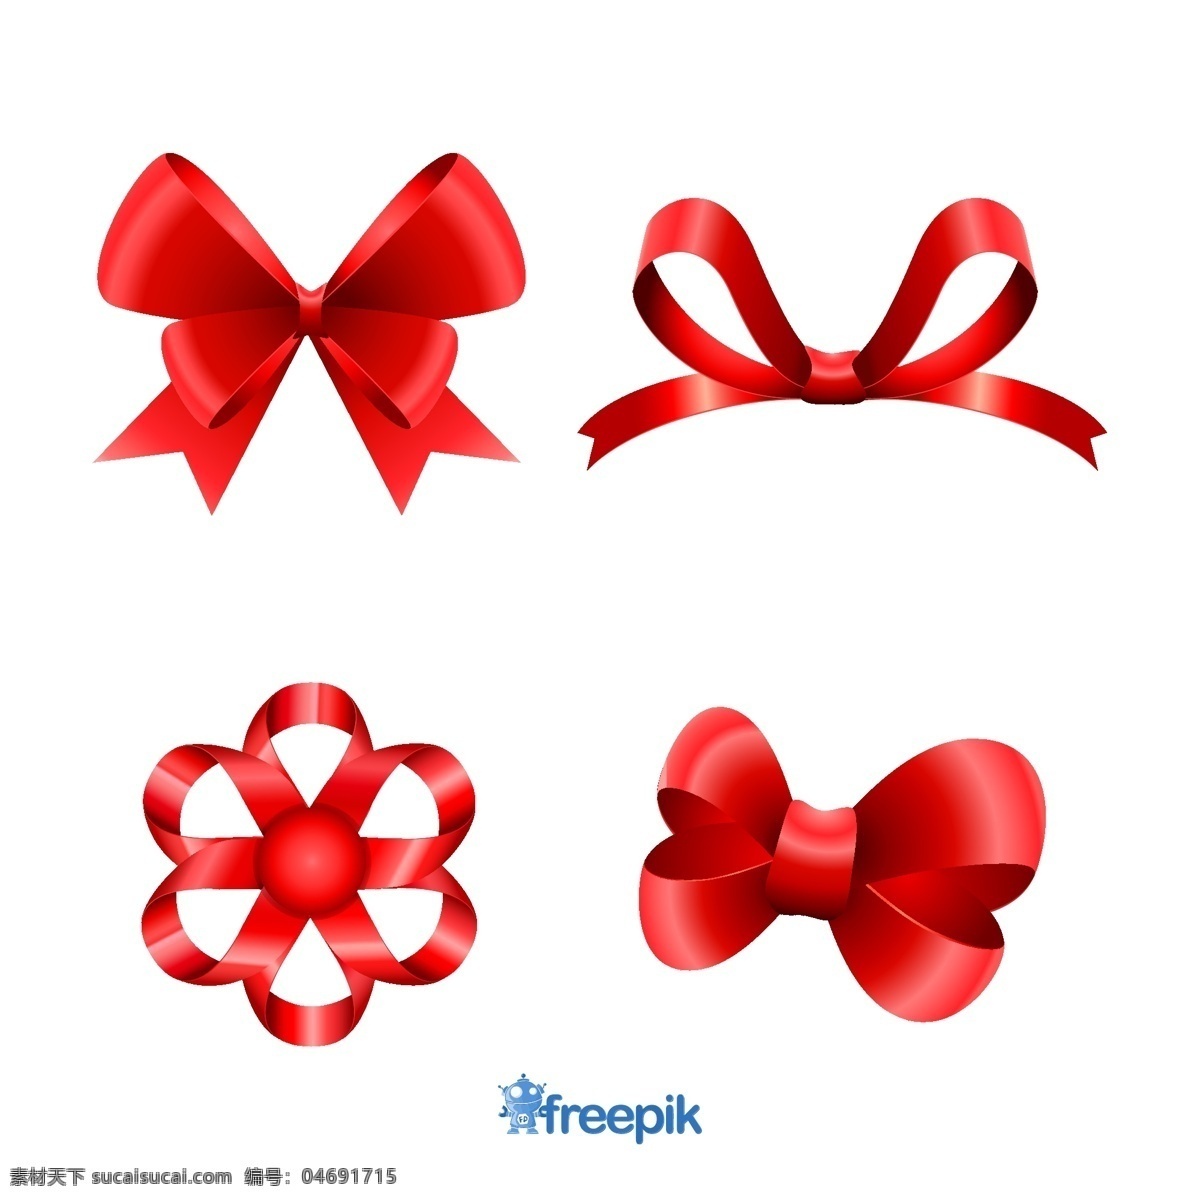 圣诞节 红丝 带 集 礼品 圣诞礼品 红色 颜色 丝带 蝴蝶结 新 装饰 包装 插图 白色 符号 红丝带 惊喜